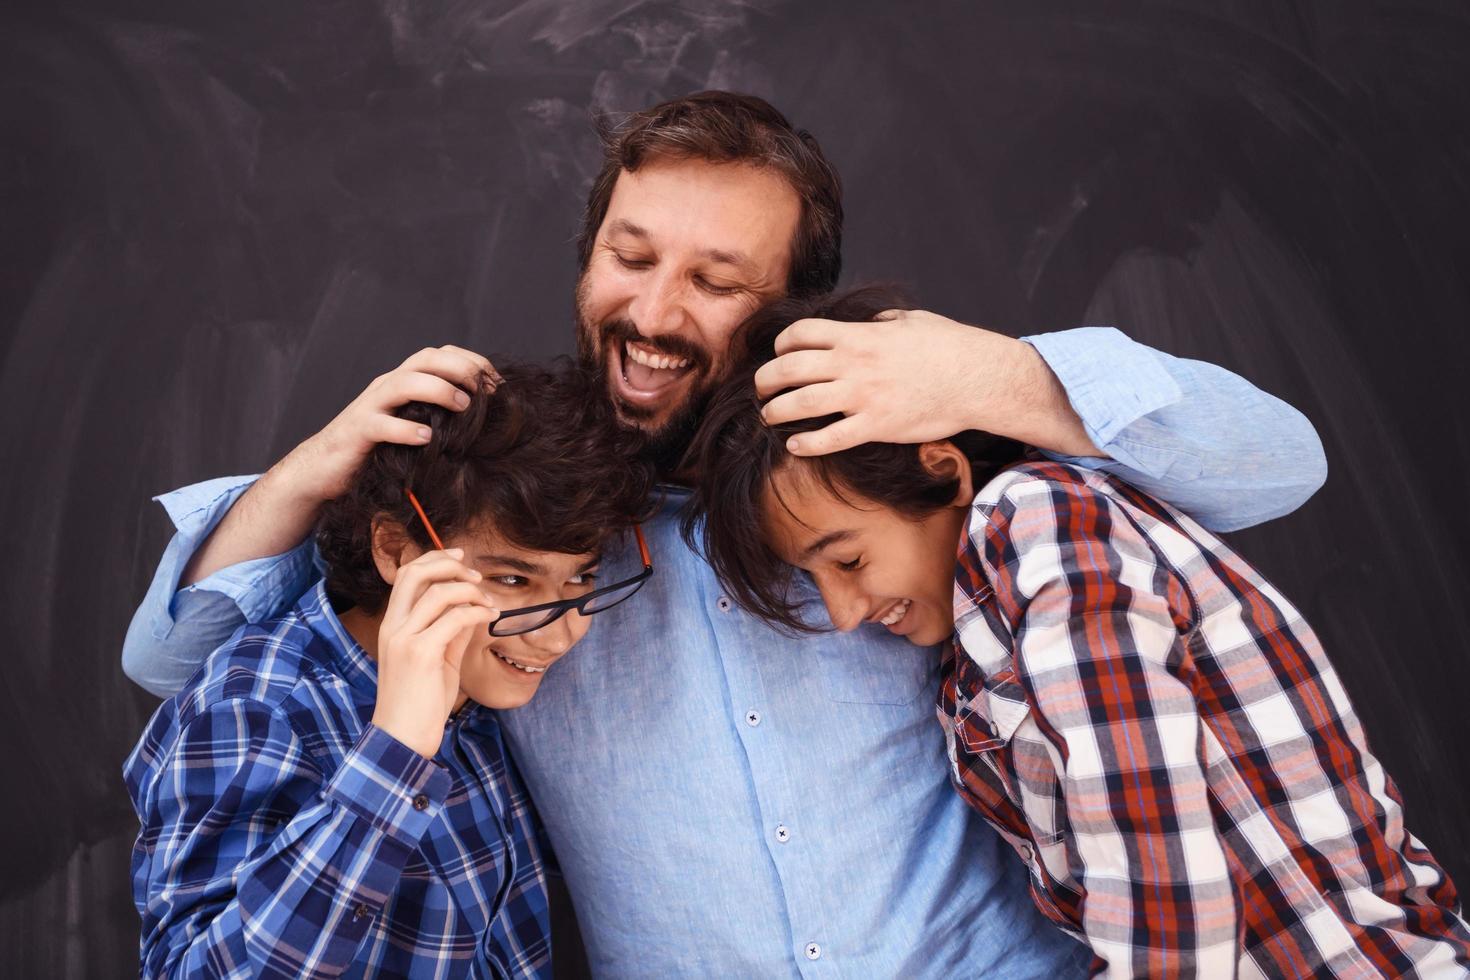 père heureux étreignant ses fils moments inoubliables de joie familiale dans une famille arabe du moyen-orient métisse photo